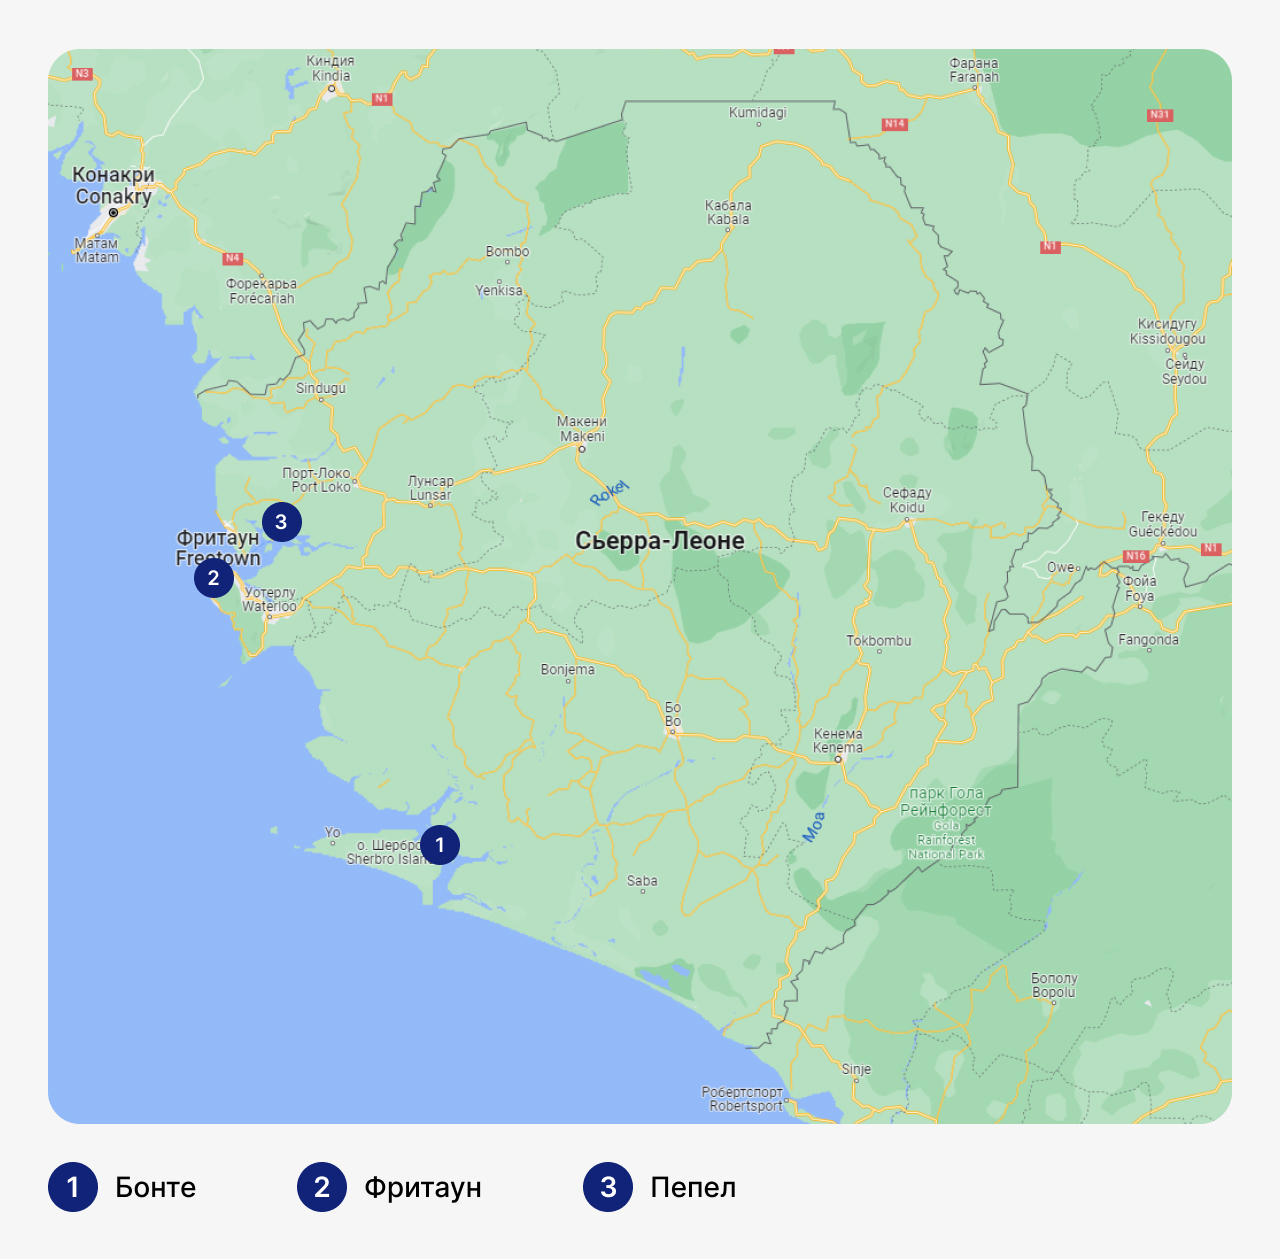 Лучшие марины в Сьерра-Леоне, карта Сьерра-Леоне с маринами, стоянка для яхт в Сьерра-Леоне, где хранить яхты в Сьерра-Леоне